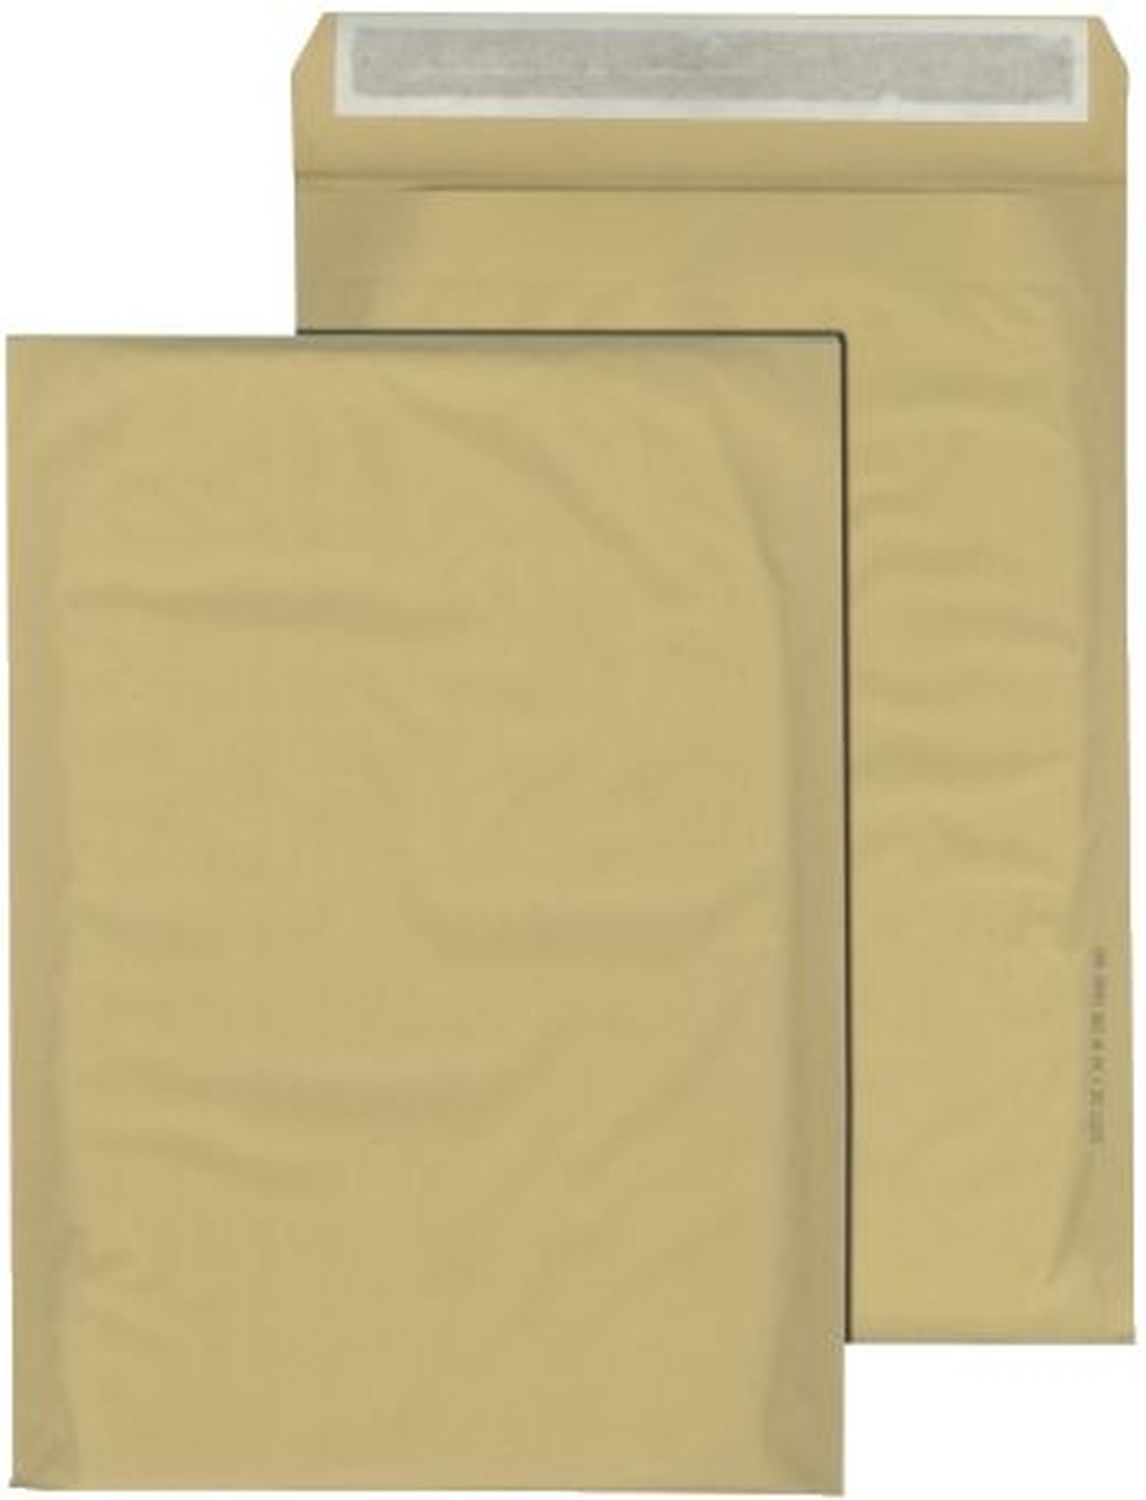 Papierpolstertasche D - 175 x 265 mm, braun